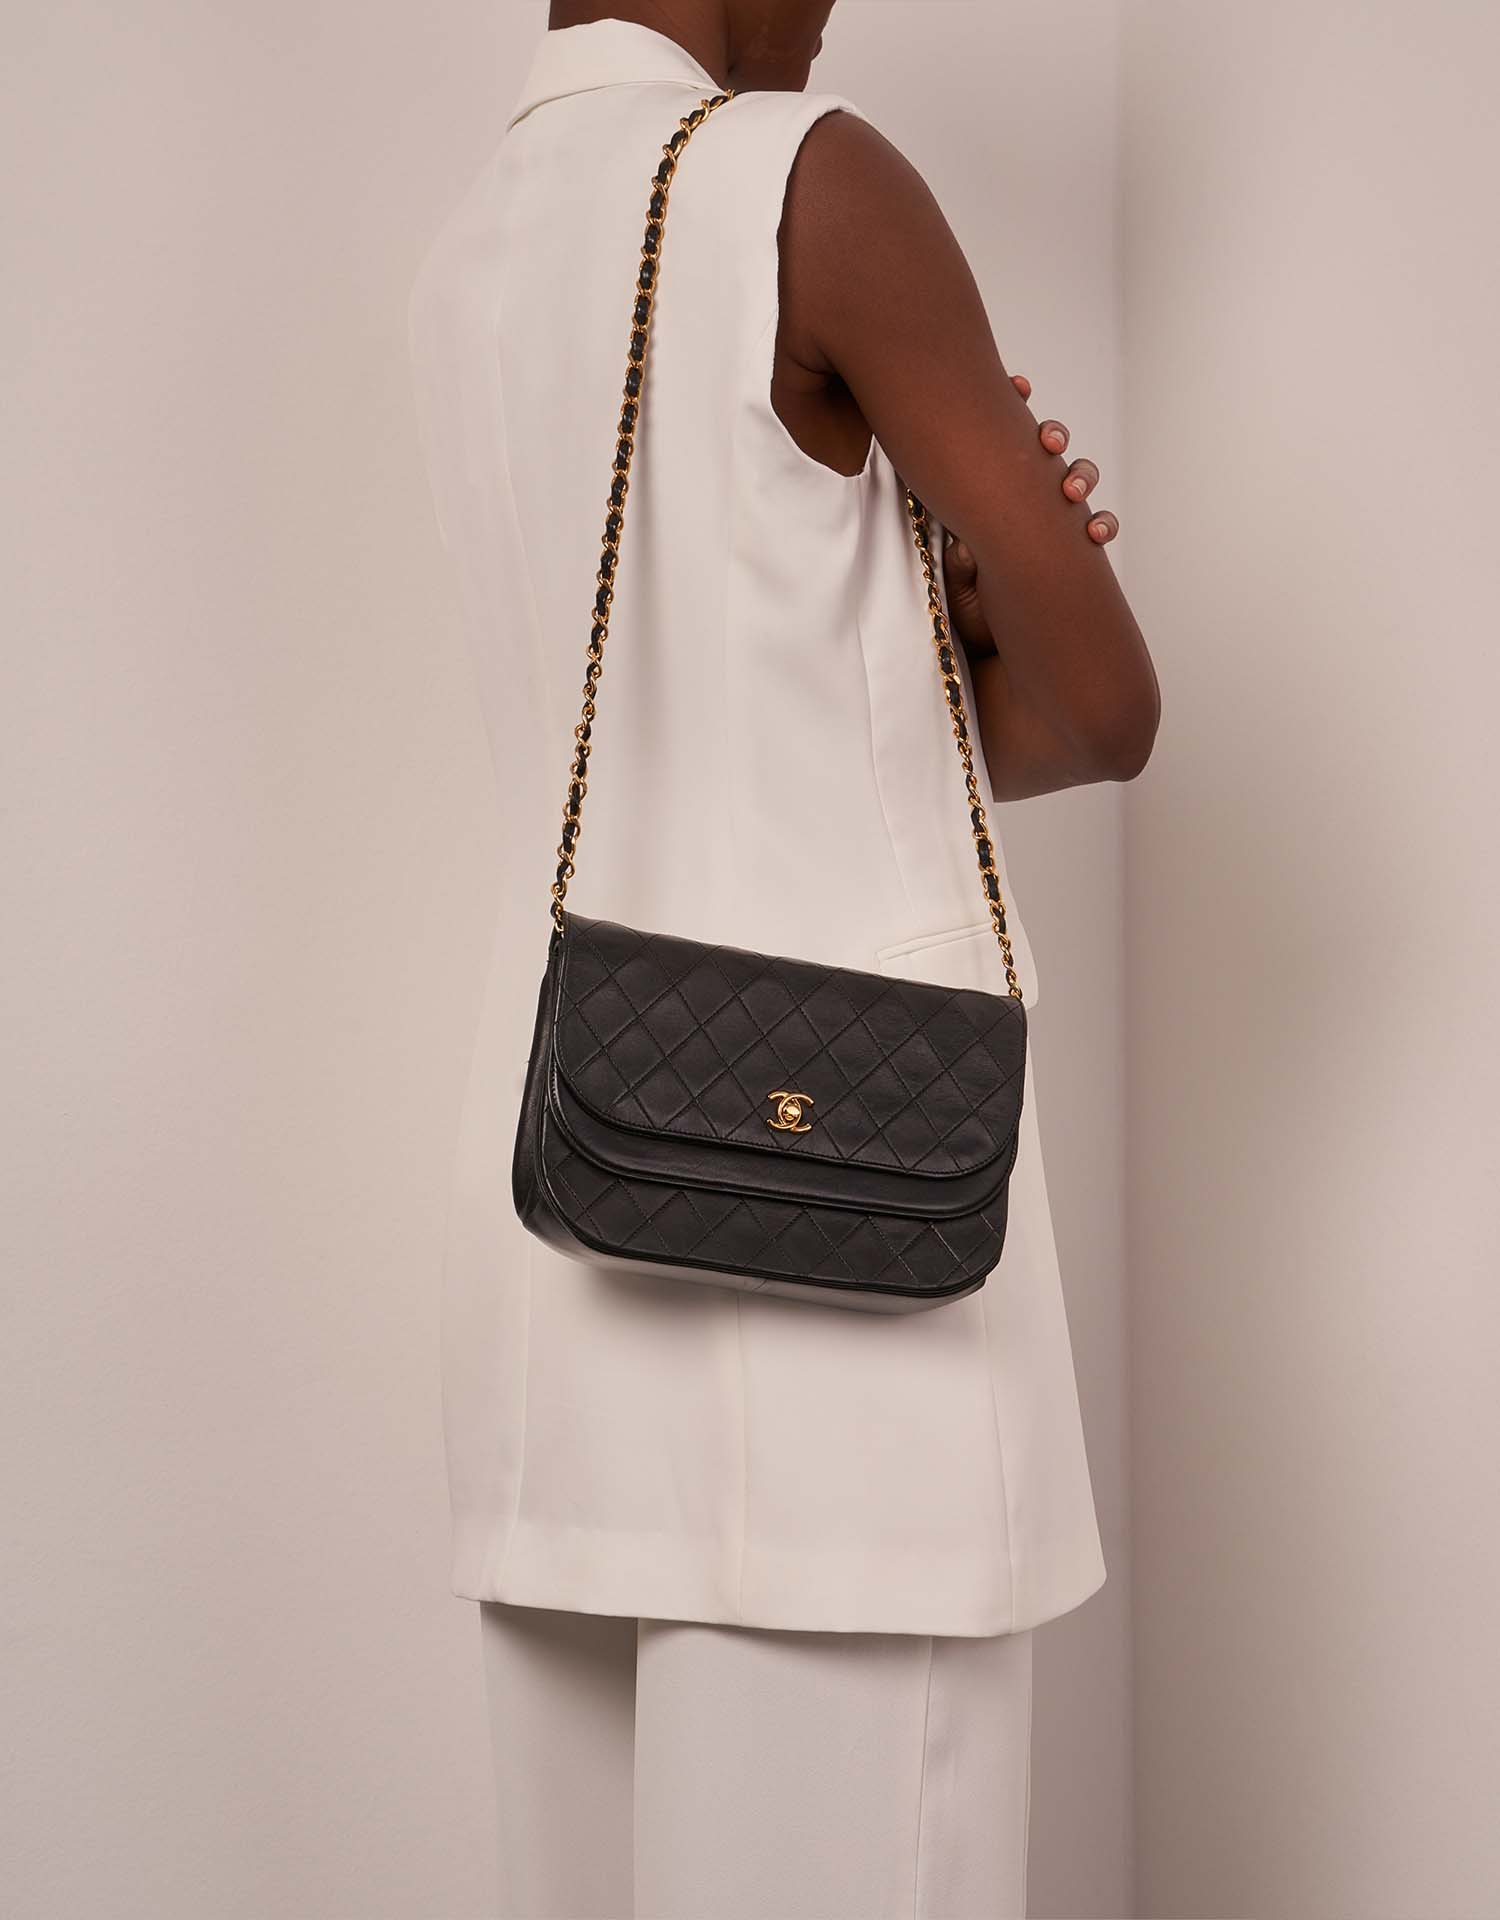 Chanel Timeless DoubleFlap Schwarz Größen Getragen | Verkaufen Sie Ihre Designer-Tasche auf Saclab.com